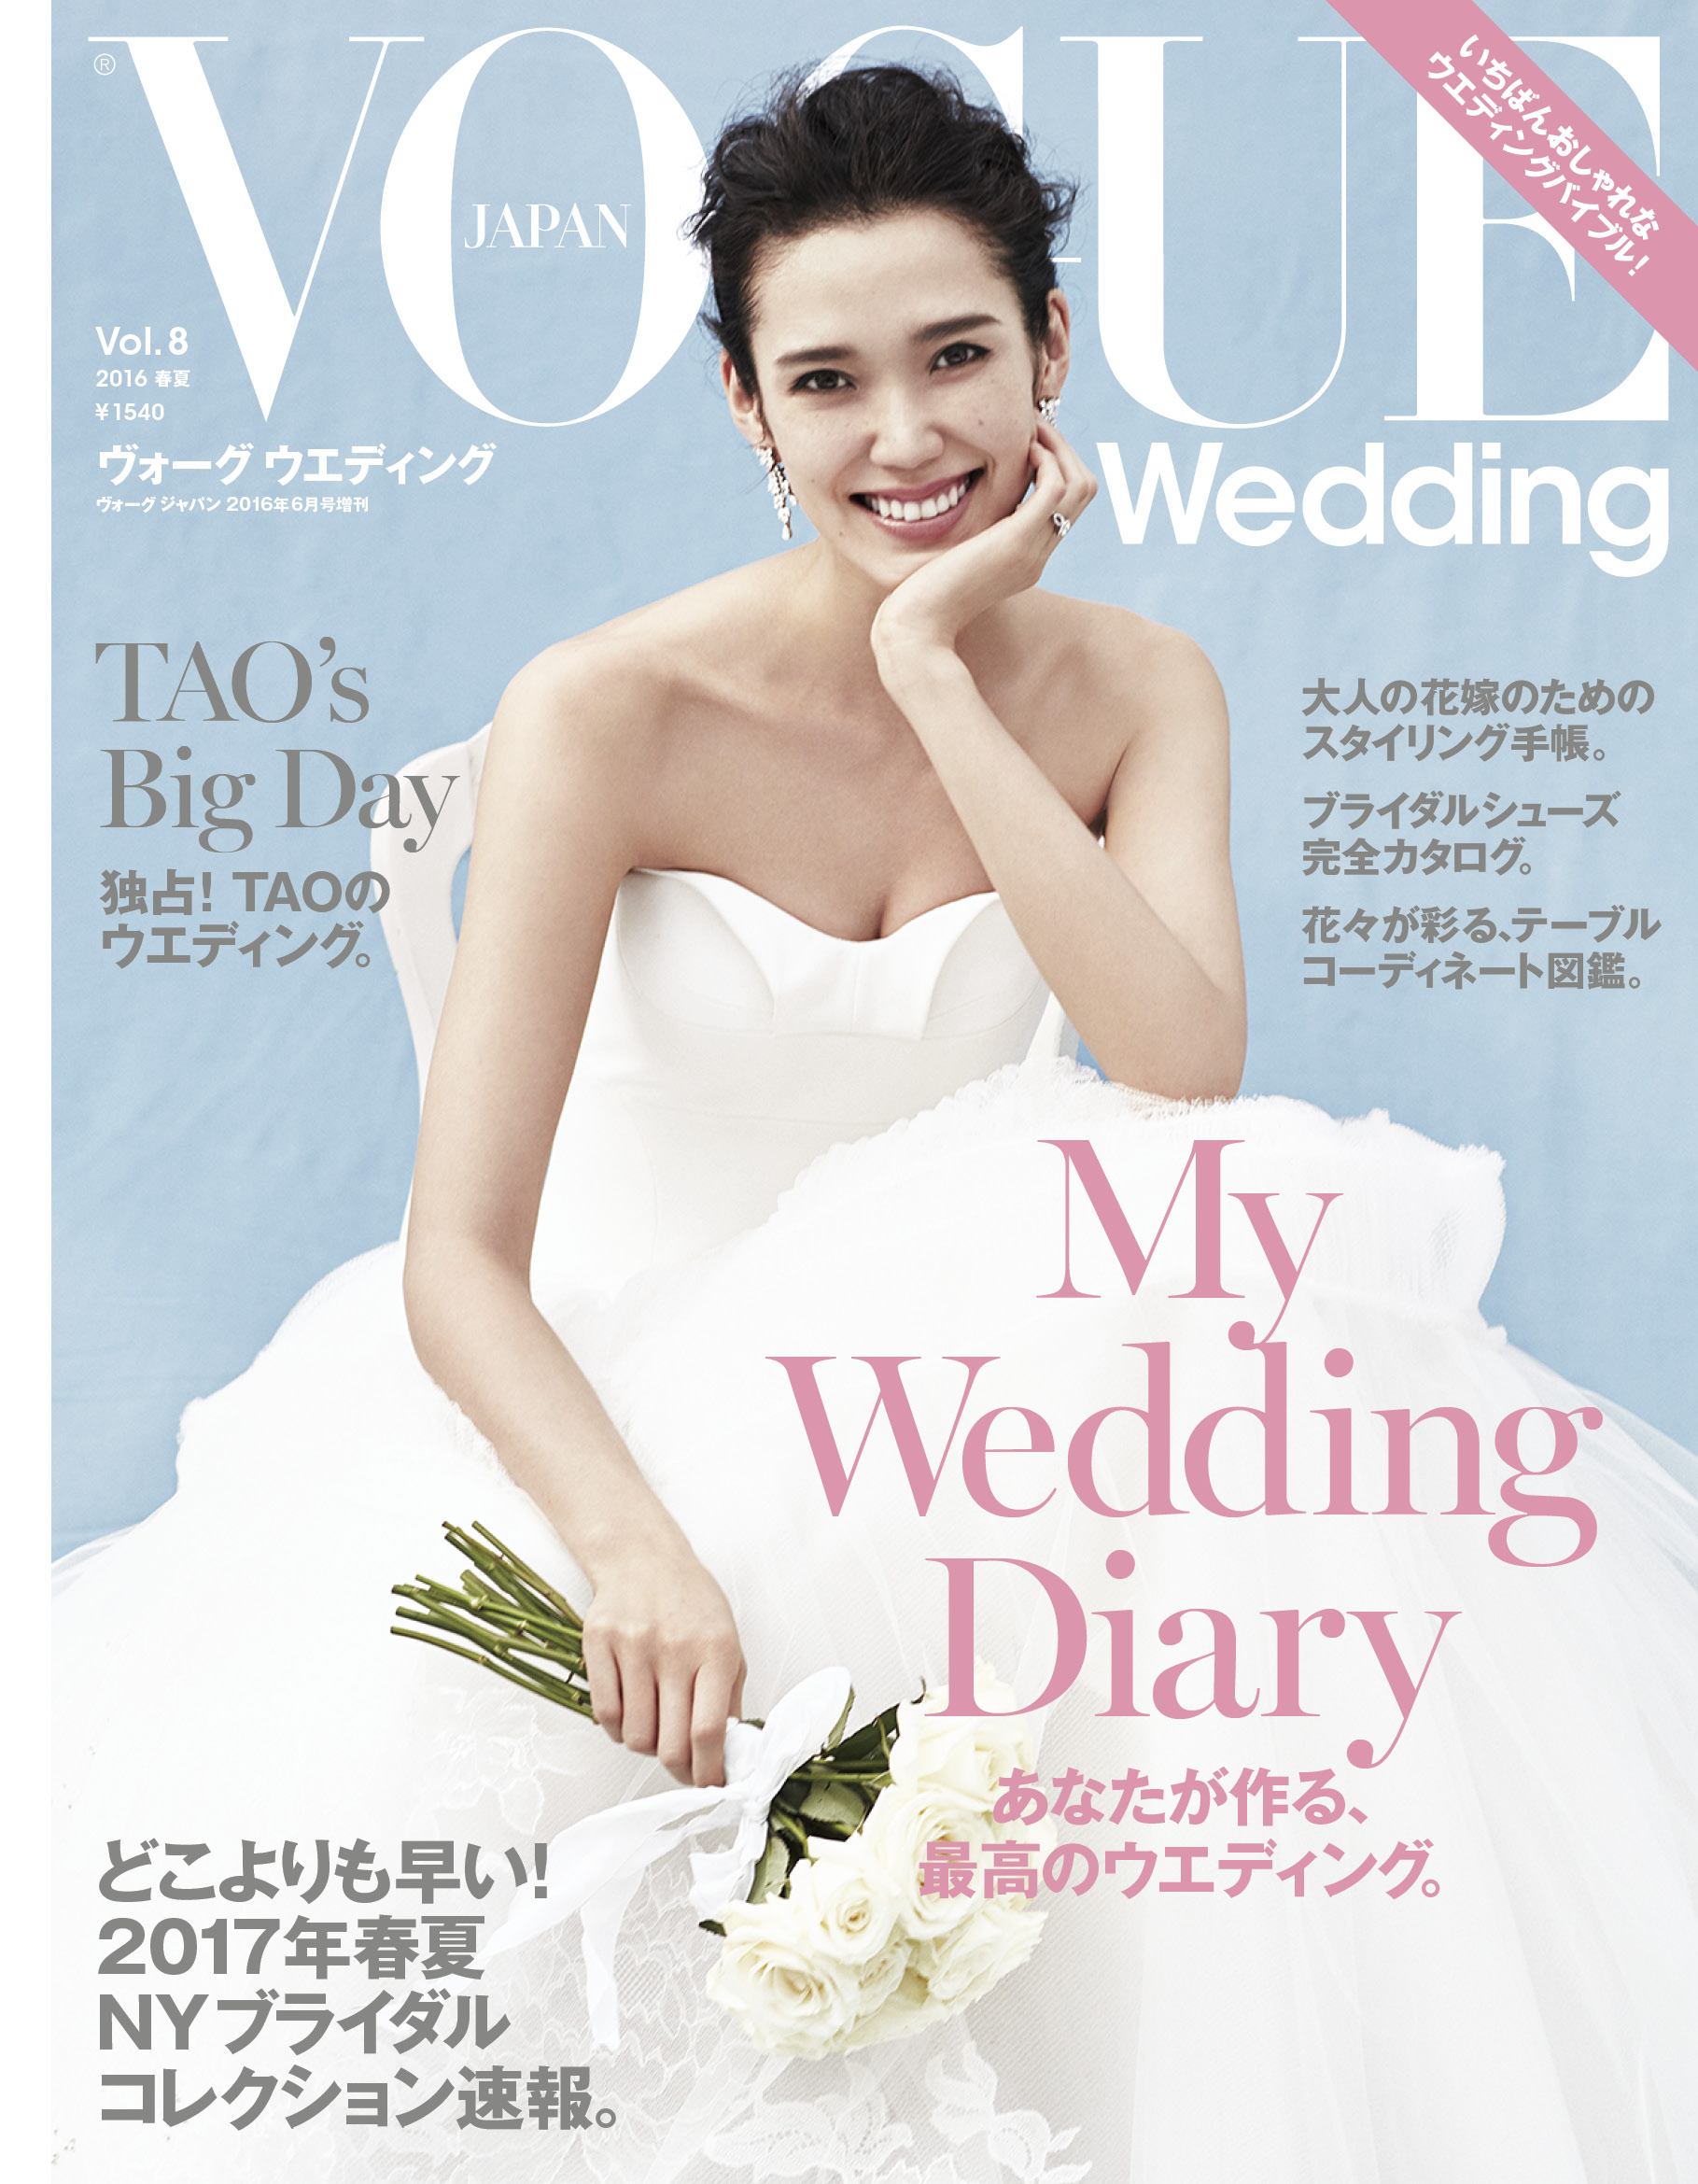 VOGUE Wedding』 Vol.8 2016春夏号 表紙にスーパーモデル、TAOが登場